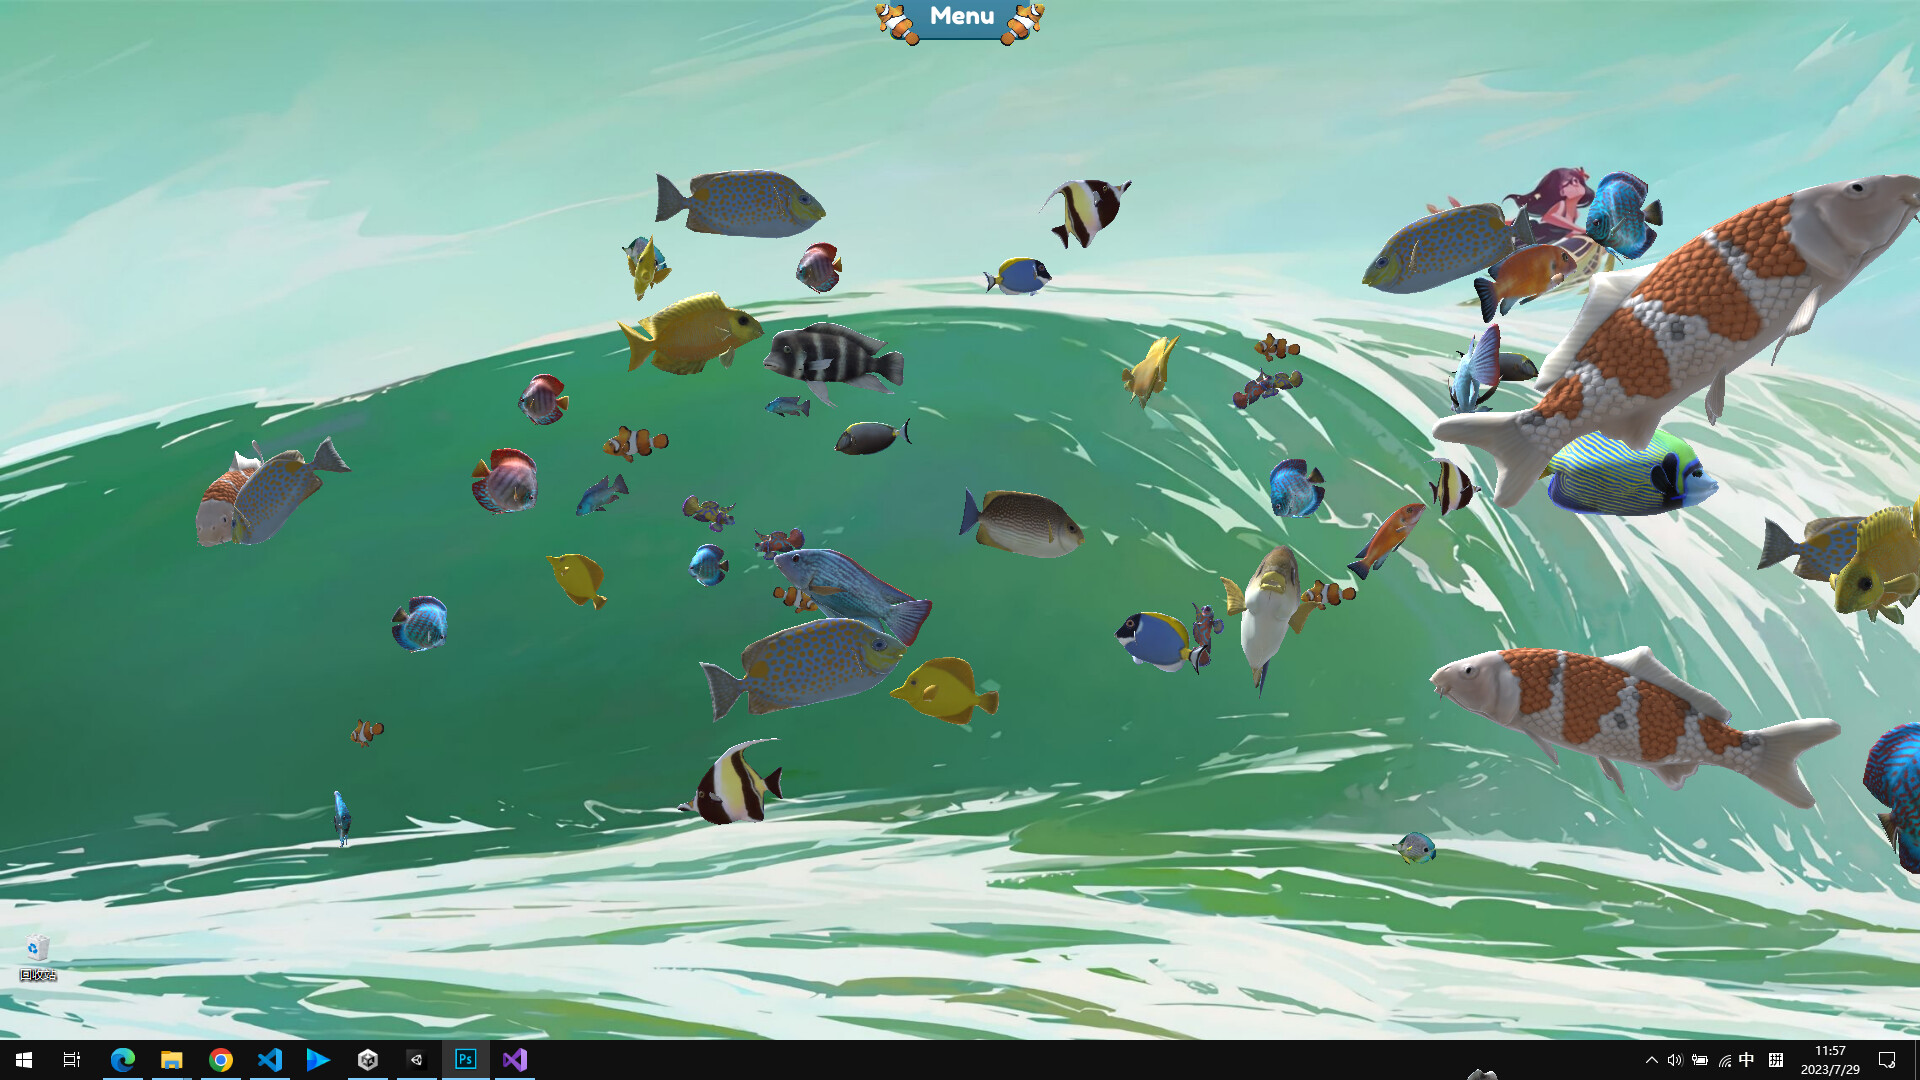 Economize 10% em Fish on the desktop no Steam